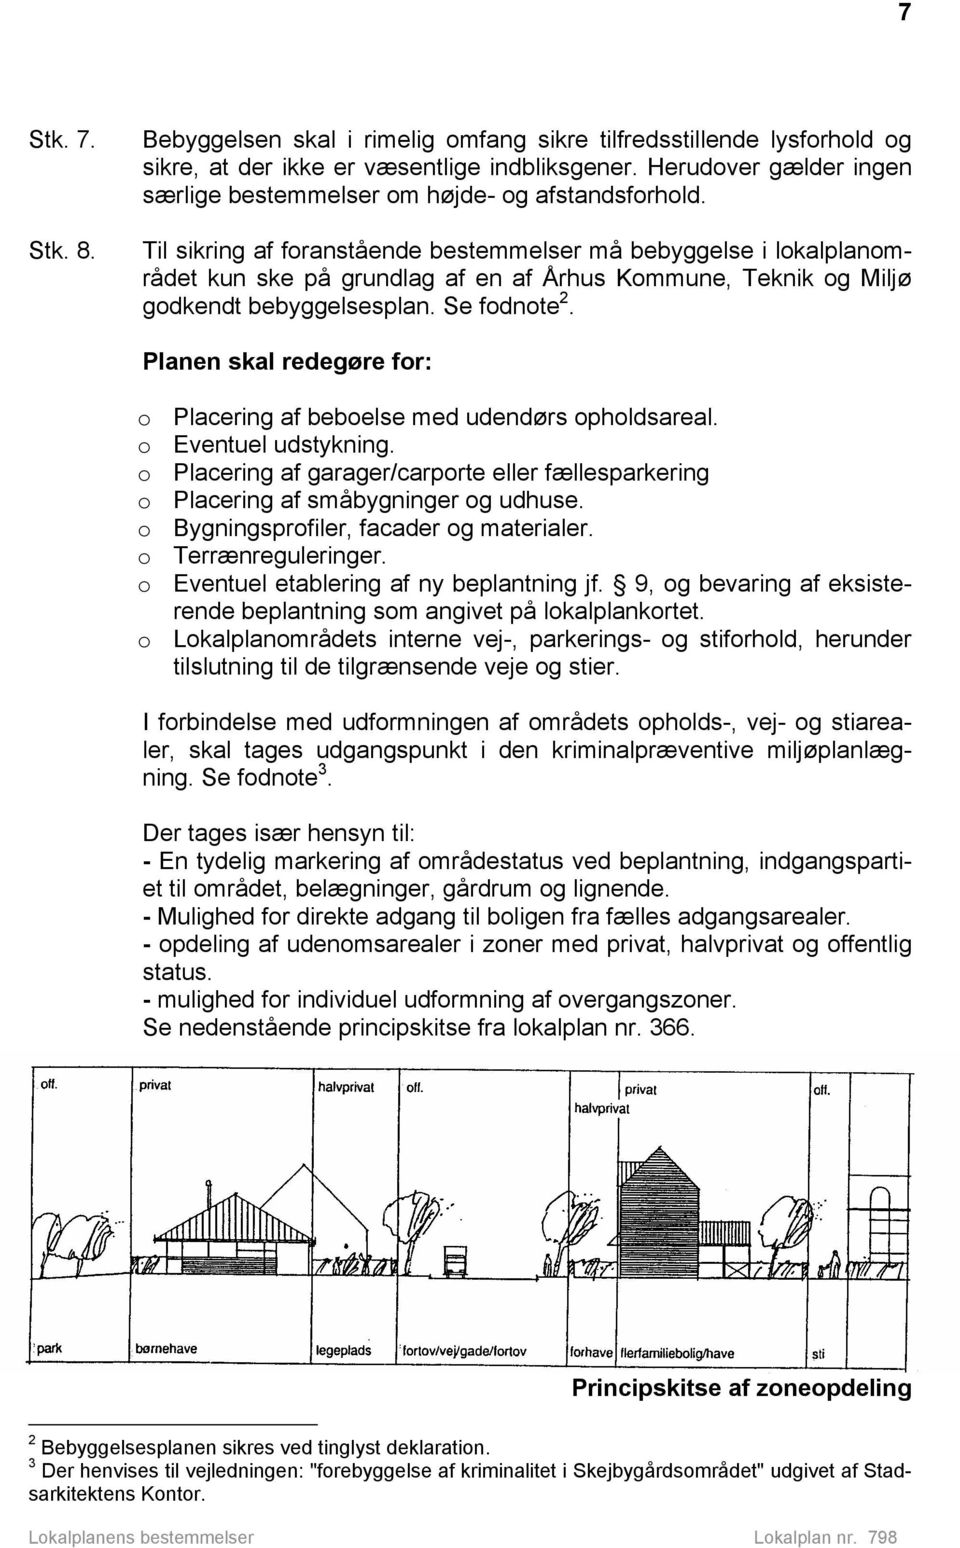 Til sikring af foranstående bestemmelser må bebyggelse i lokalplanområdet kun ske på grundlag af en af Århus Kommune, Teknik og Miljø godkendt bebyggelsesplan. Se fodnote 2.